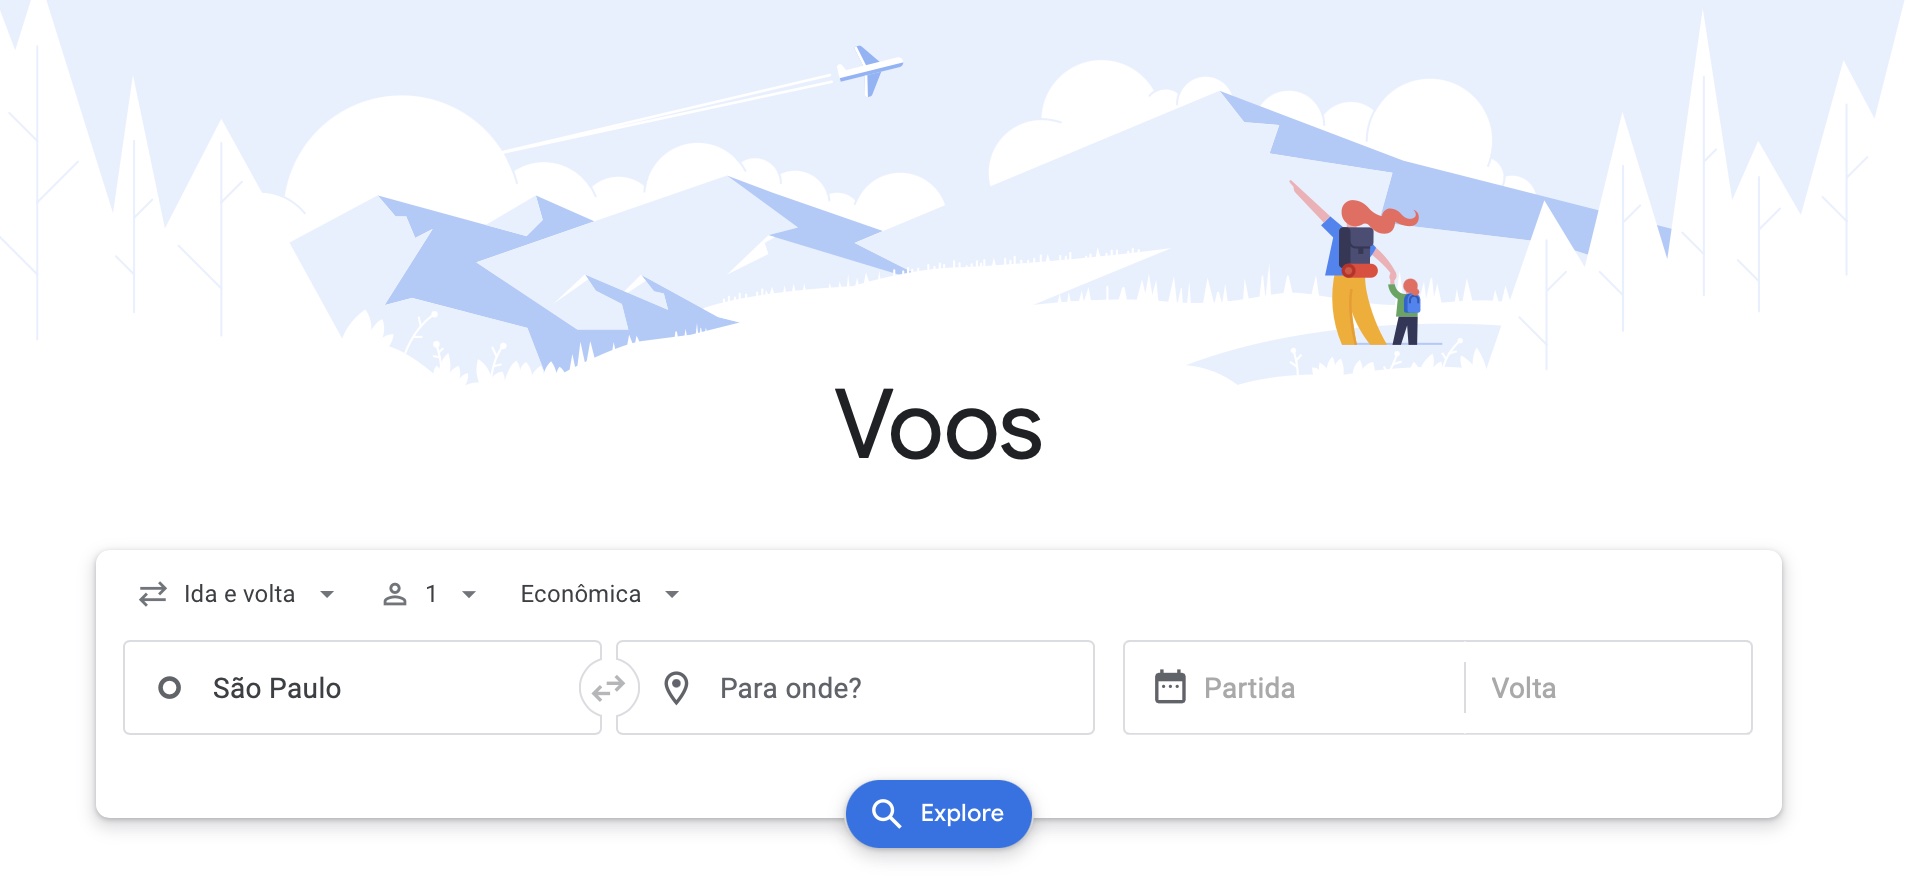 Google Voos - Google Flights